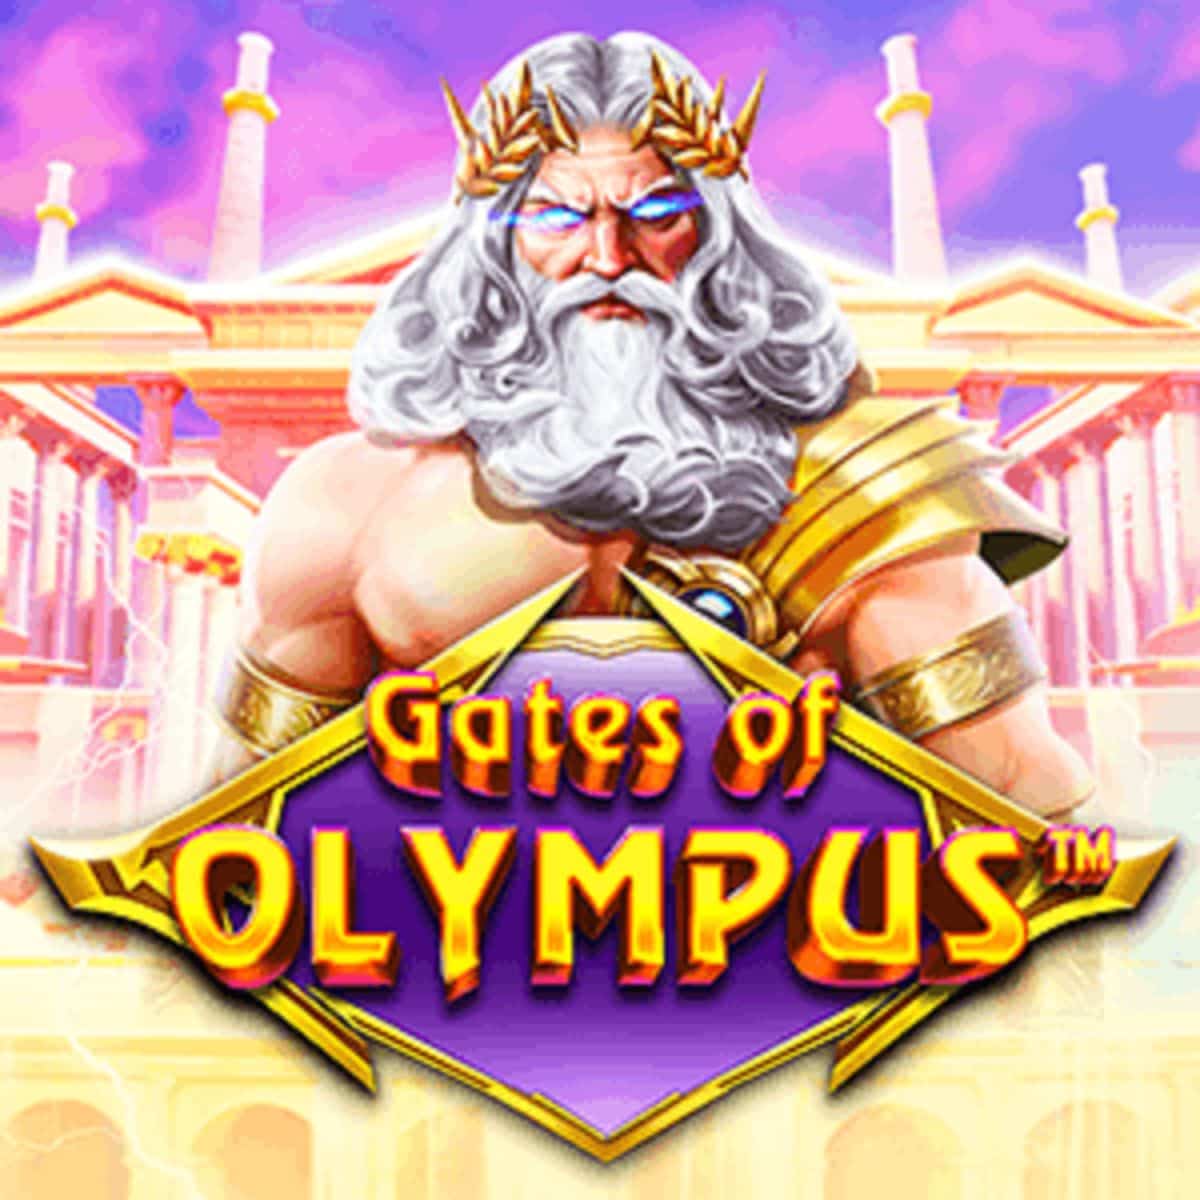 Cánh cổng Olympus: Quay hũ độc đáo cùng các thần thoại Hy Lạp